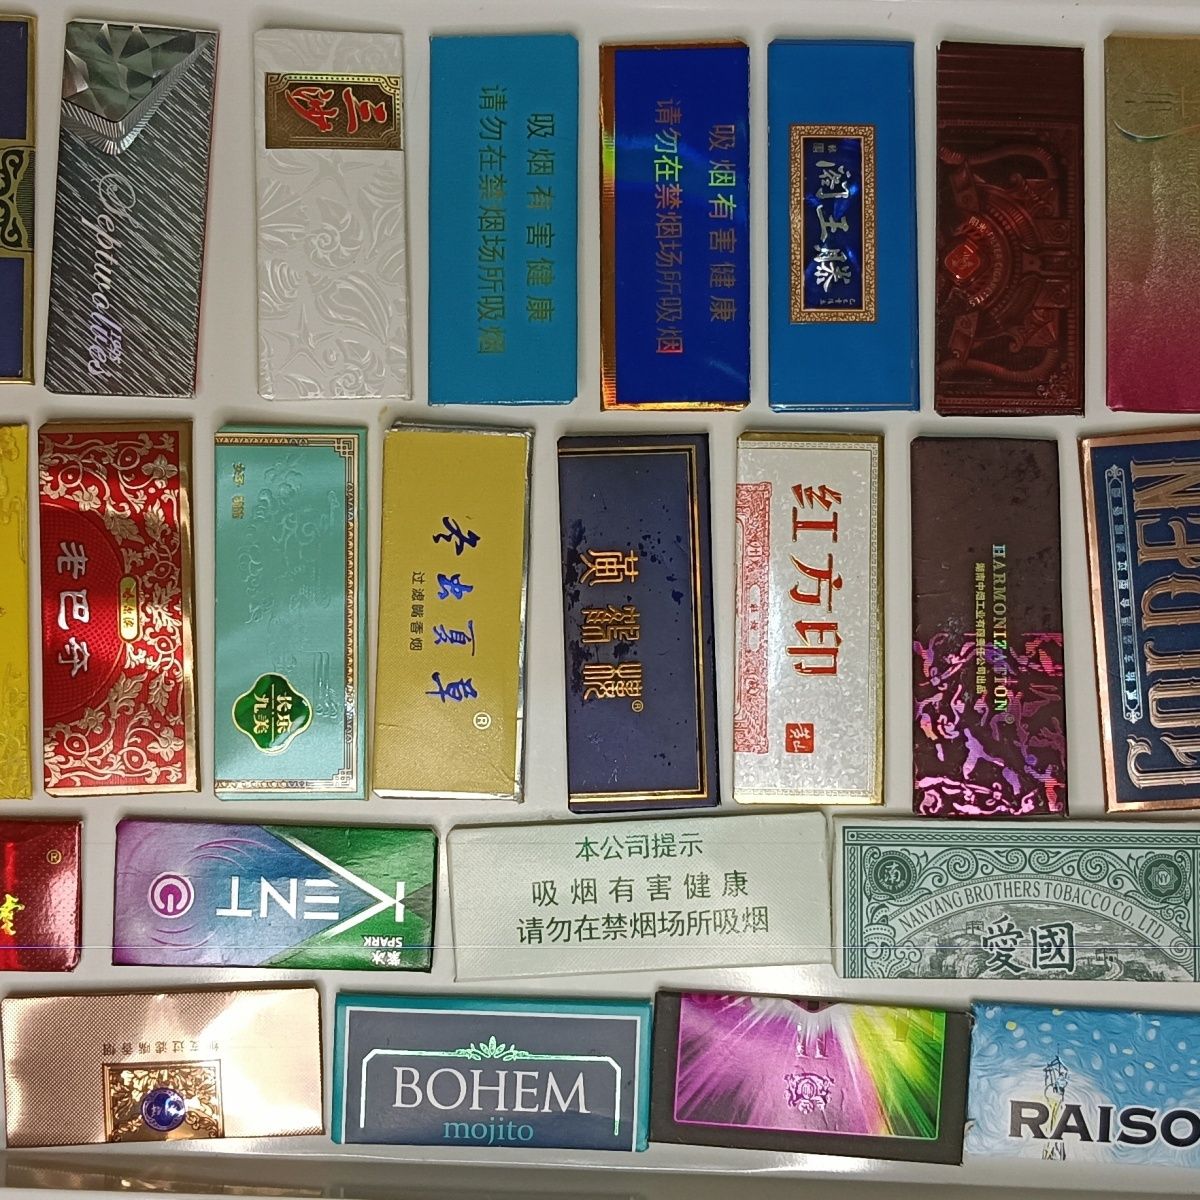 稀有烟卡呸呸卡轰轰卡叠好的成品短款长条折纸艺术烟盒牌儿童玩具